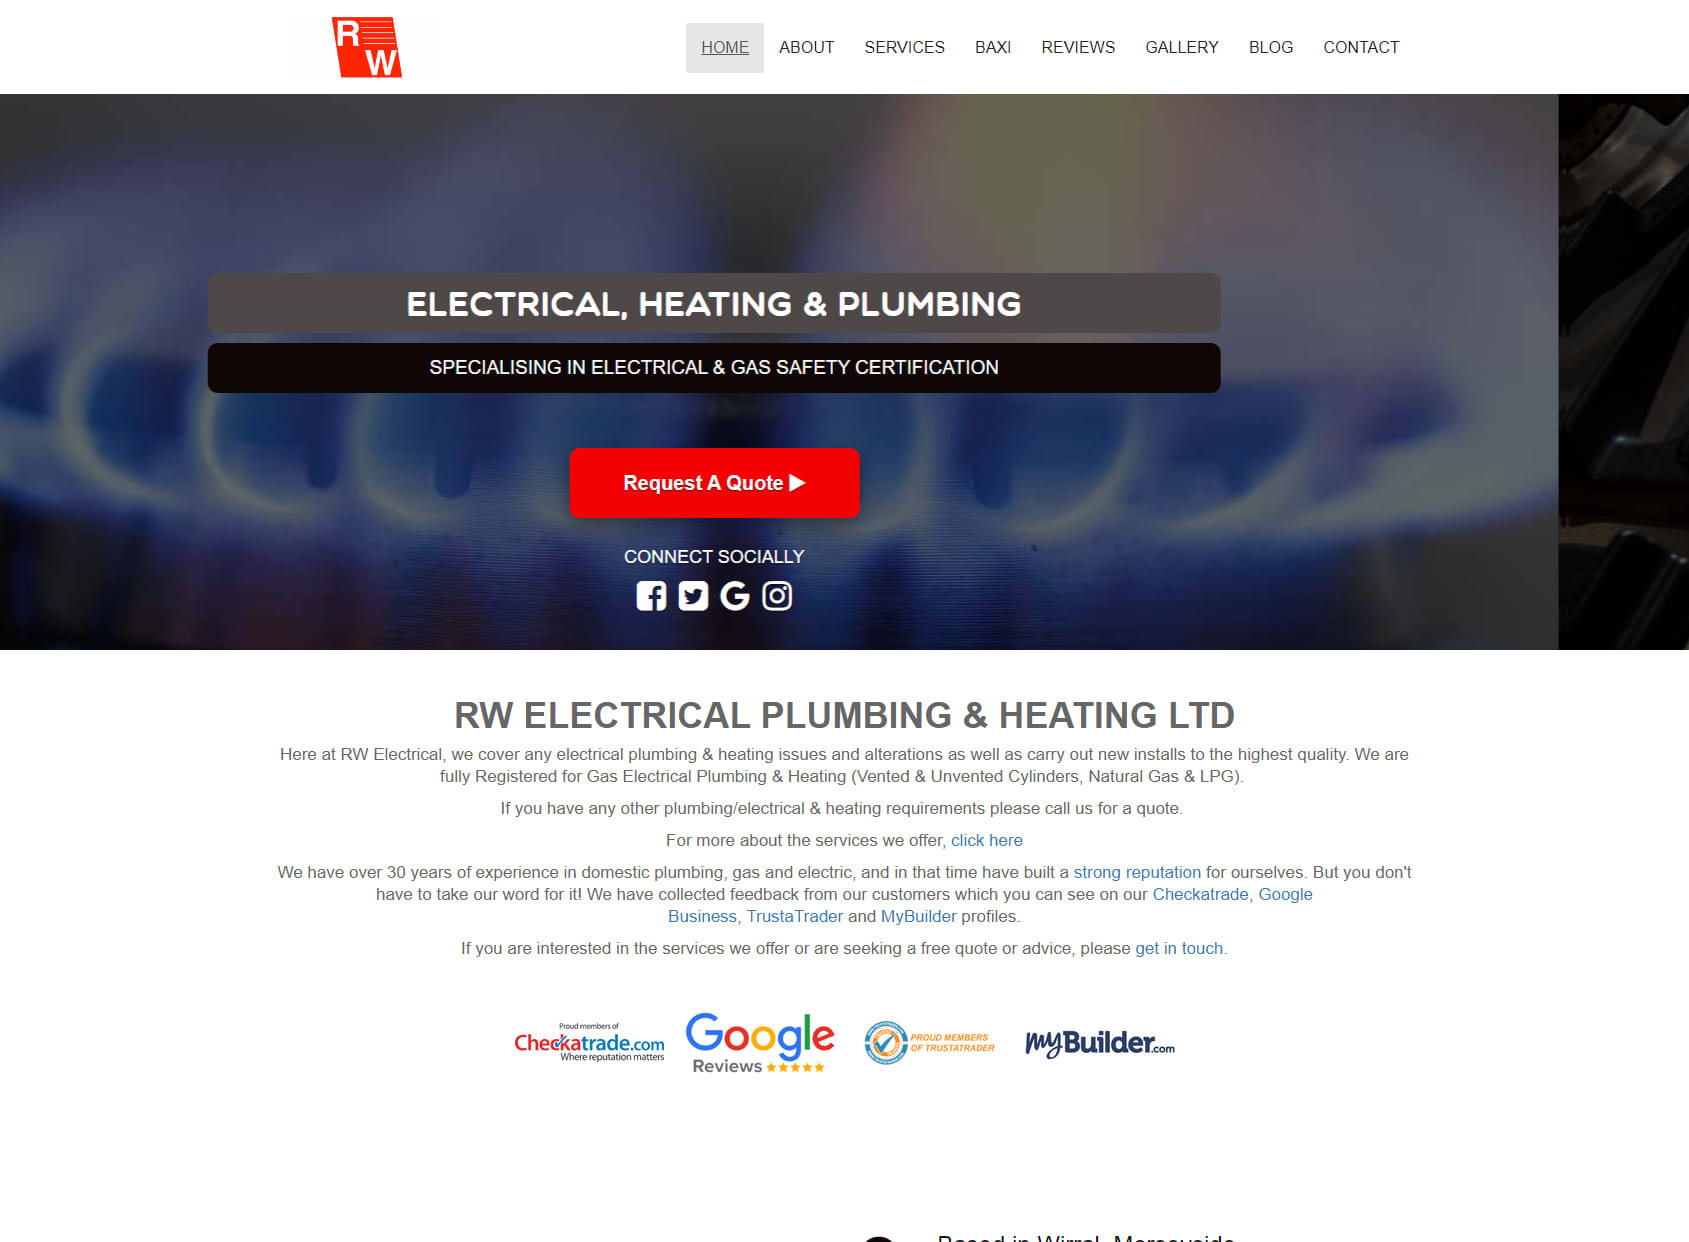 RW Electrical Plumbing & Heating Ltd